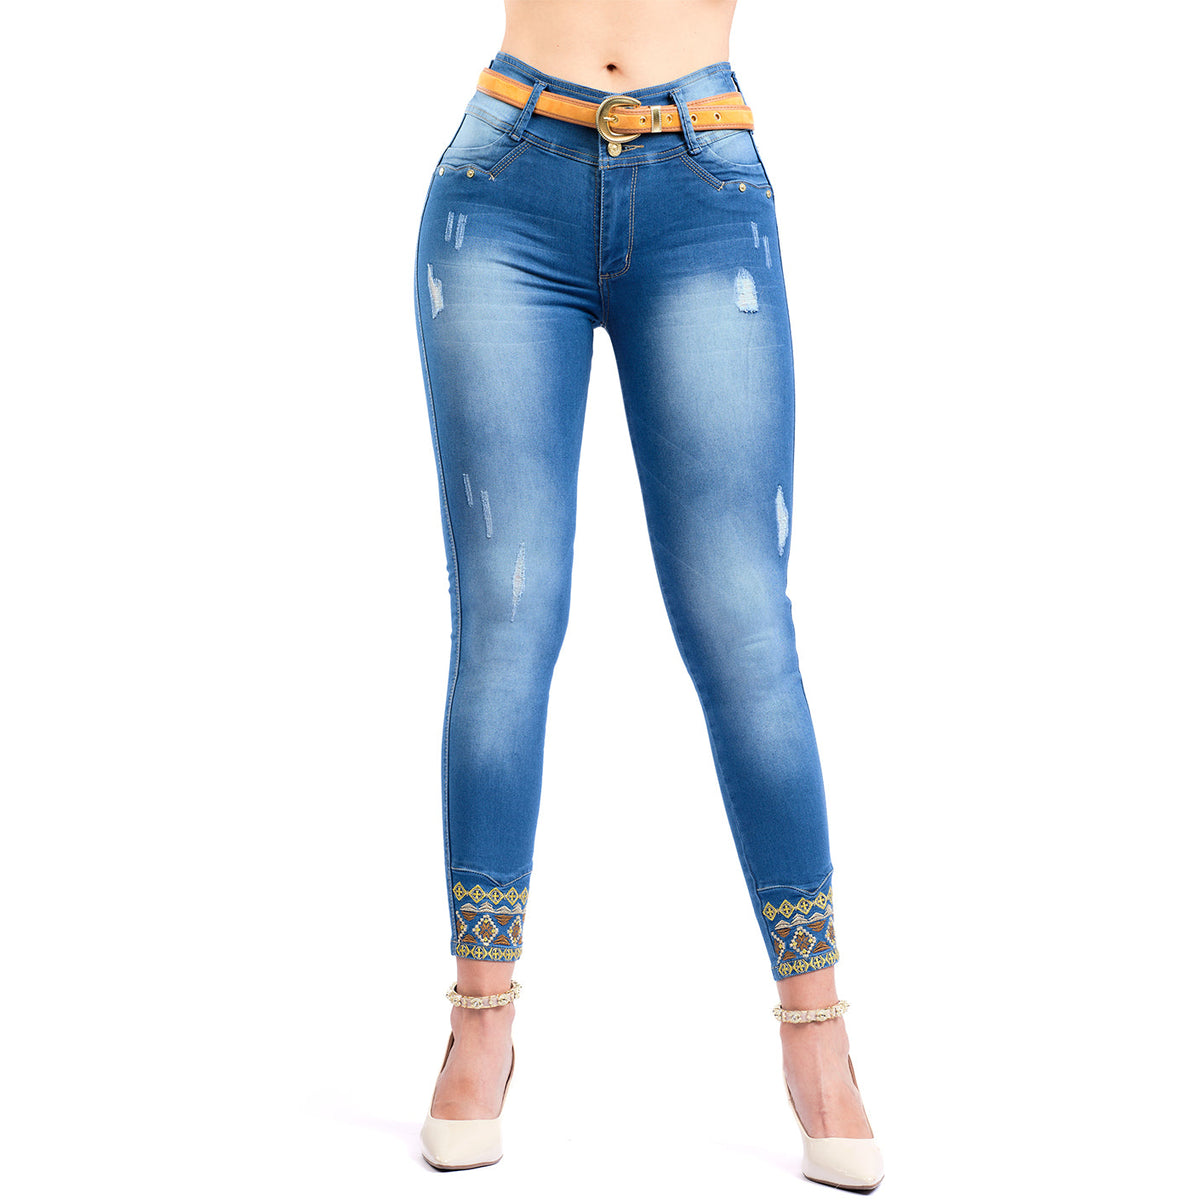 LT. Rose 1500 Jeans ajustados con bordados rotos en los tobillos que levantan los glúteos